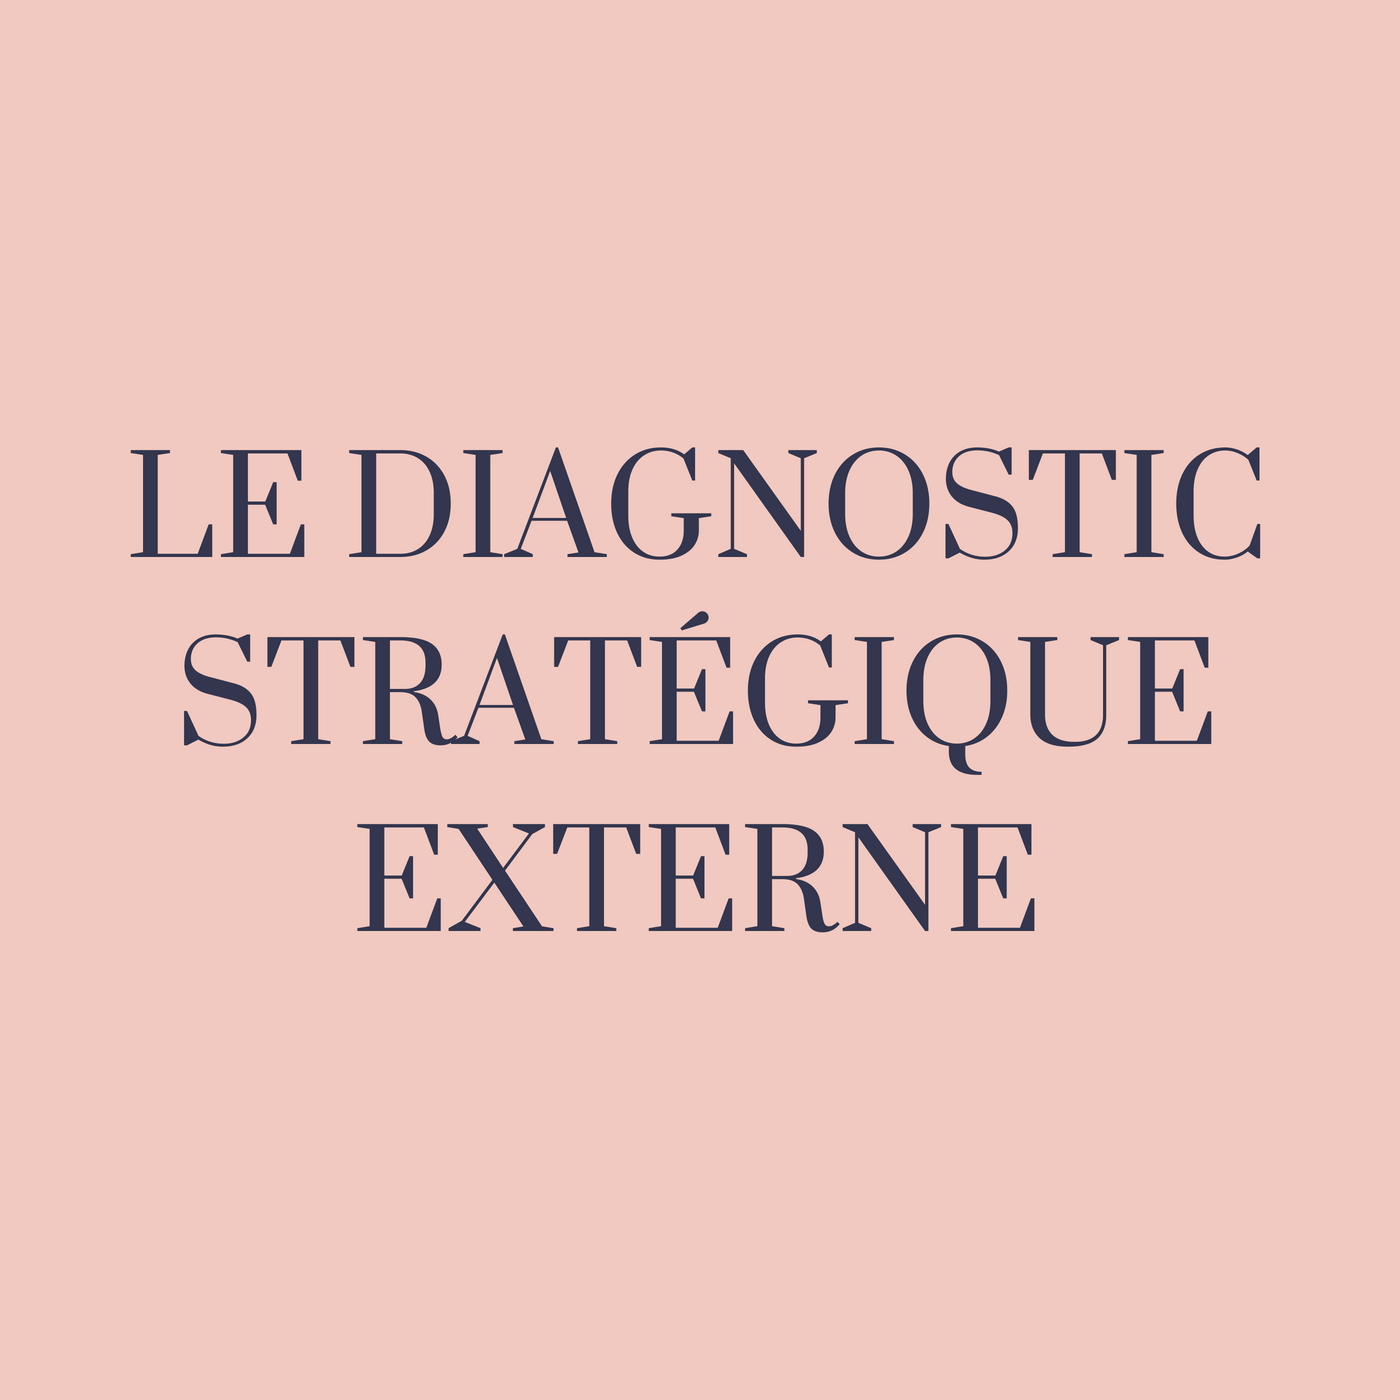 Le diagnostique stratégique externe